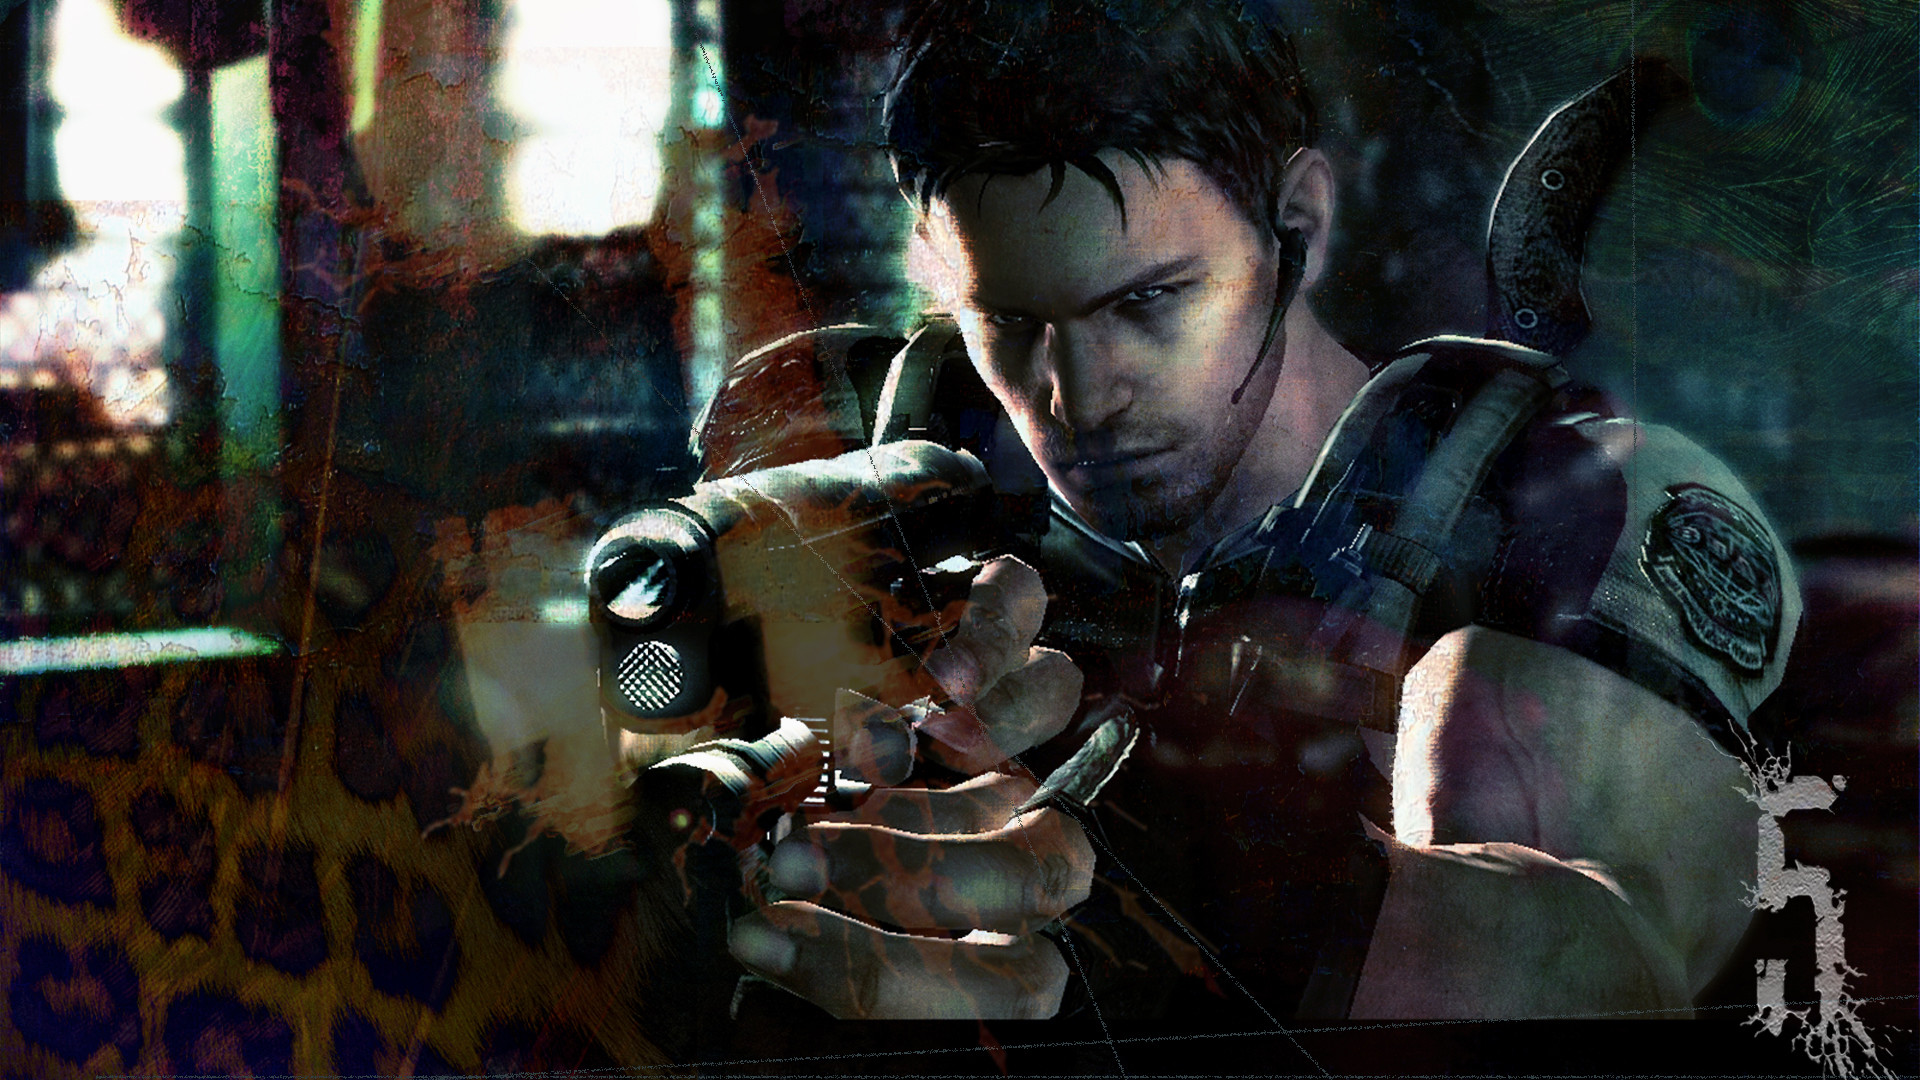 1920x1080 Resident Evil 5 Chris taking aim - PS3 Wallpaper.jpg